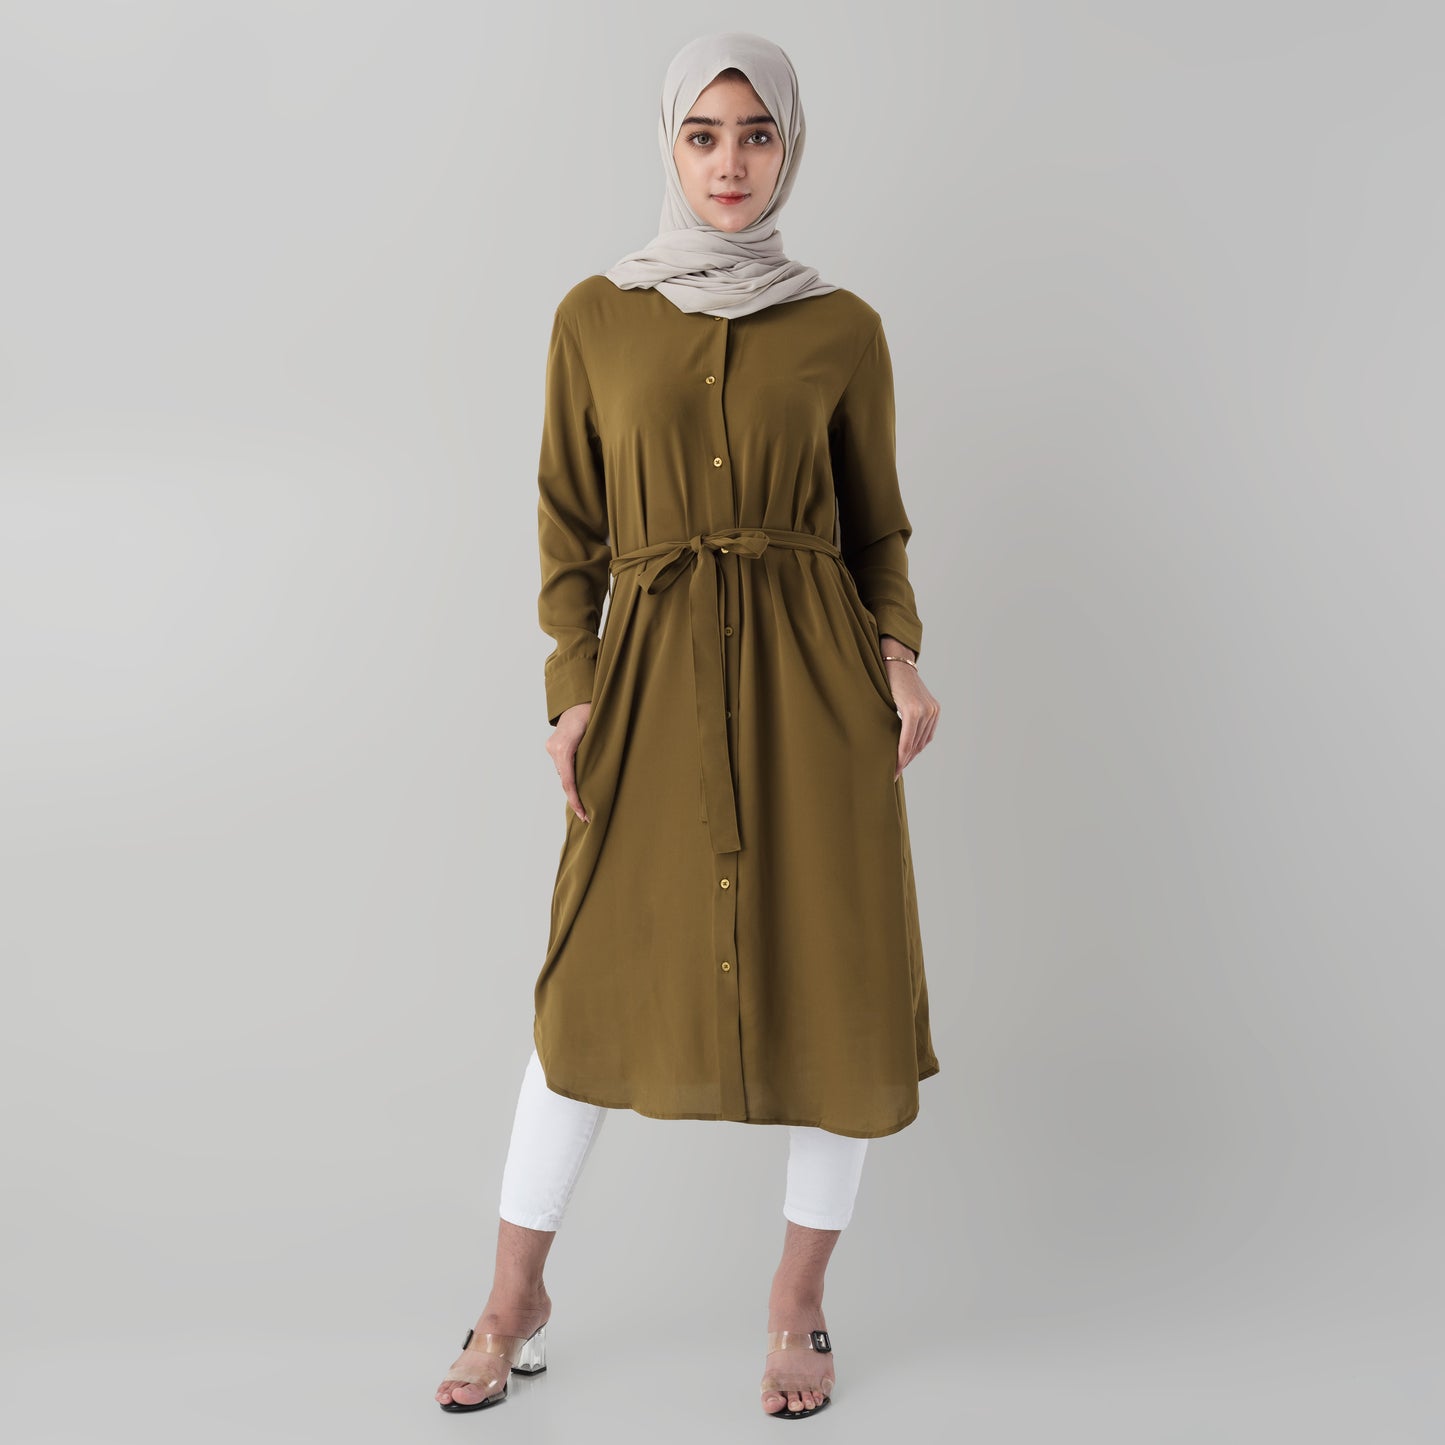 Benhill Yena Dress Tunik Wanita Mustard 874-39A0B